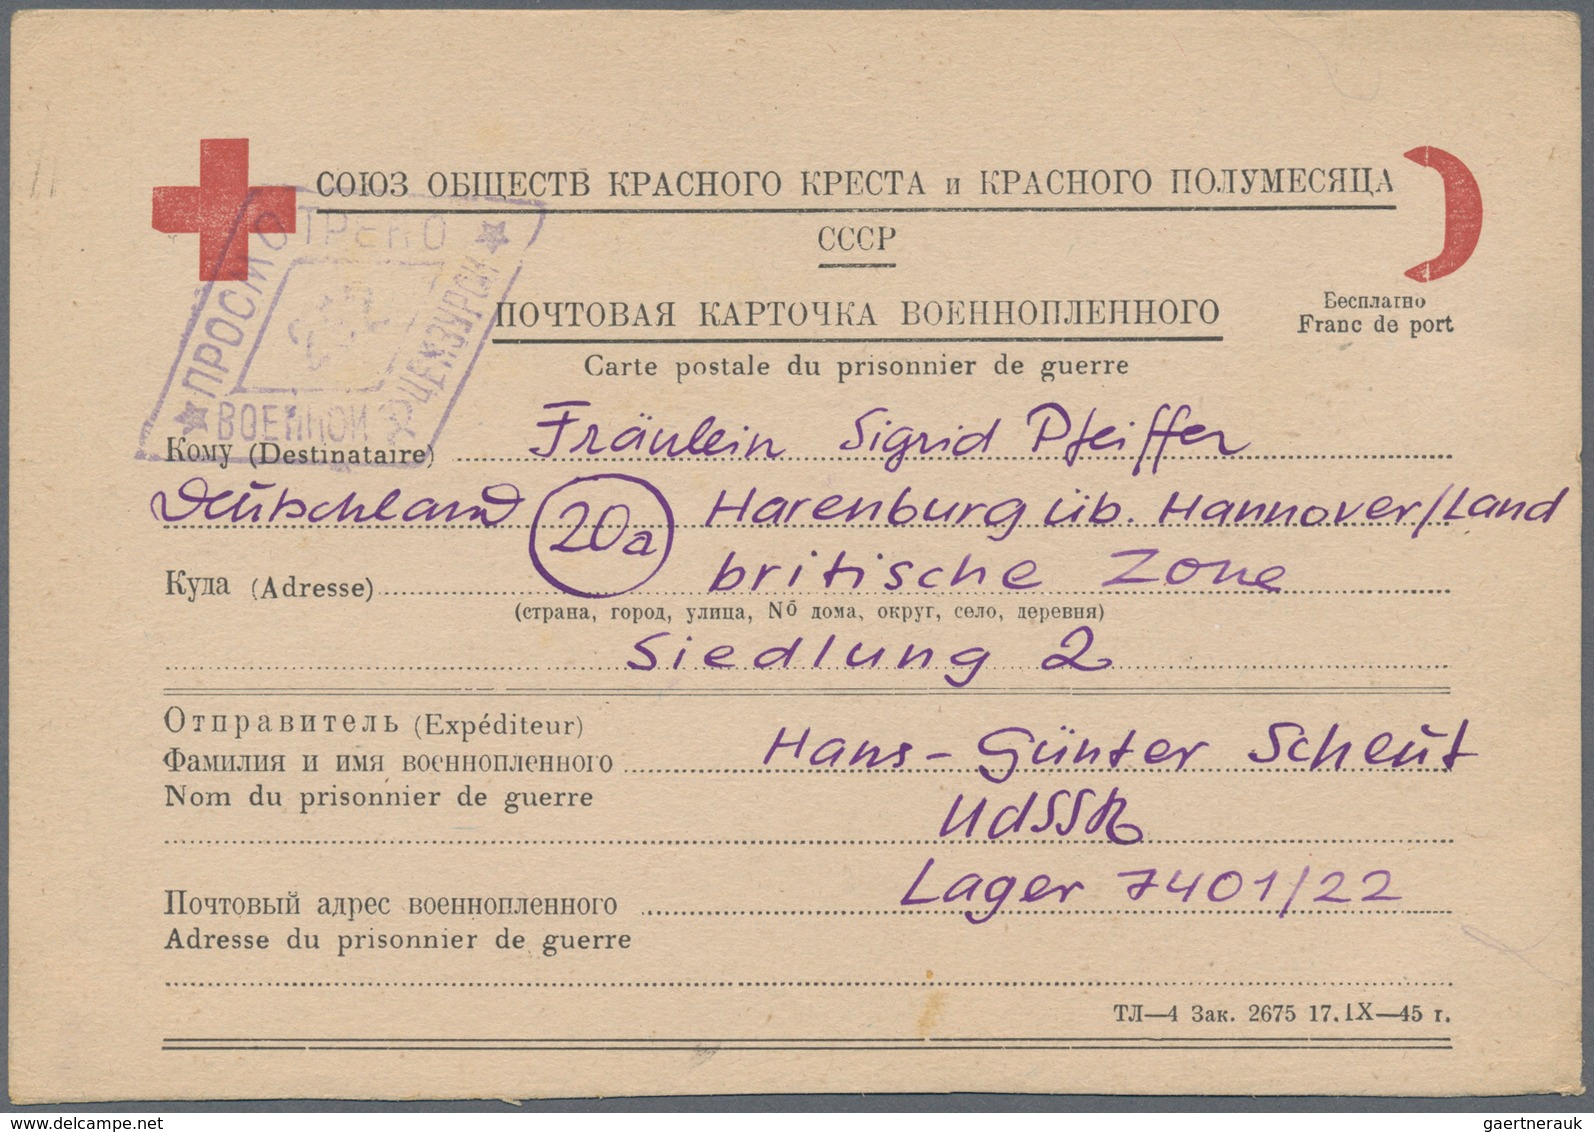 Kriegsgefangenen-Lagerpost: 1947/1949, zehn Karten (div. Vordrucke) eines dt. Kriegsgefangenen (Lage